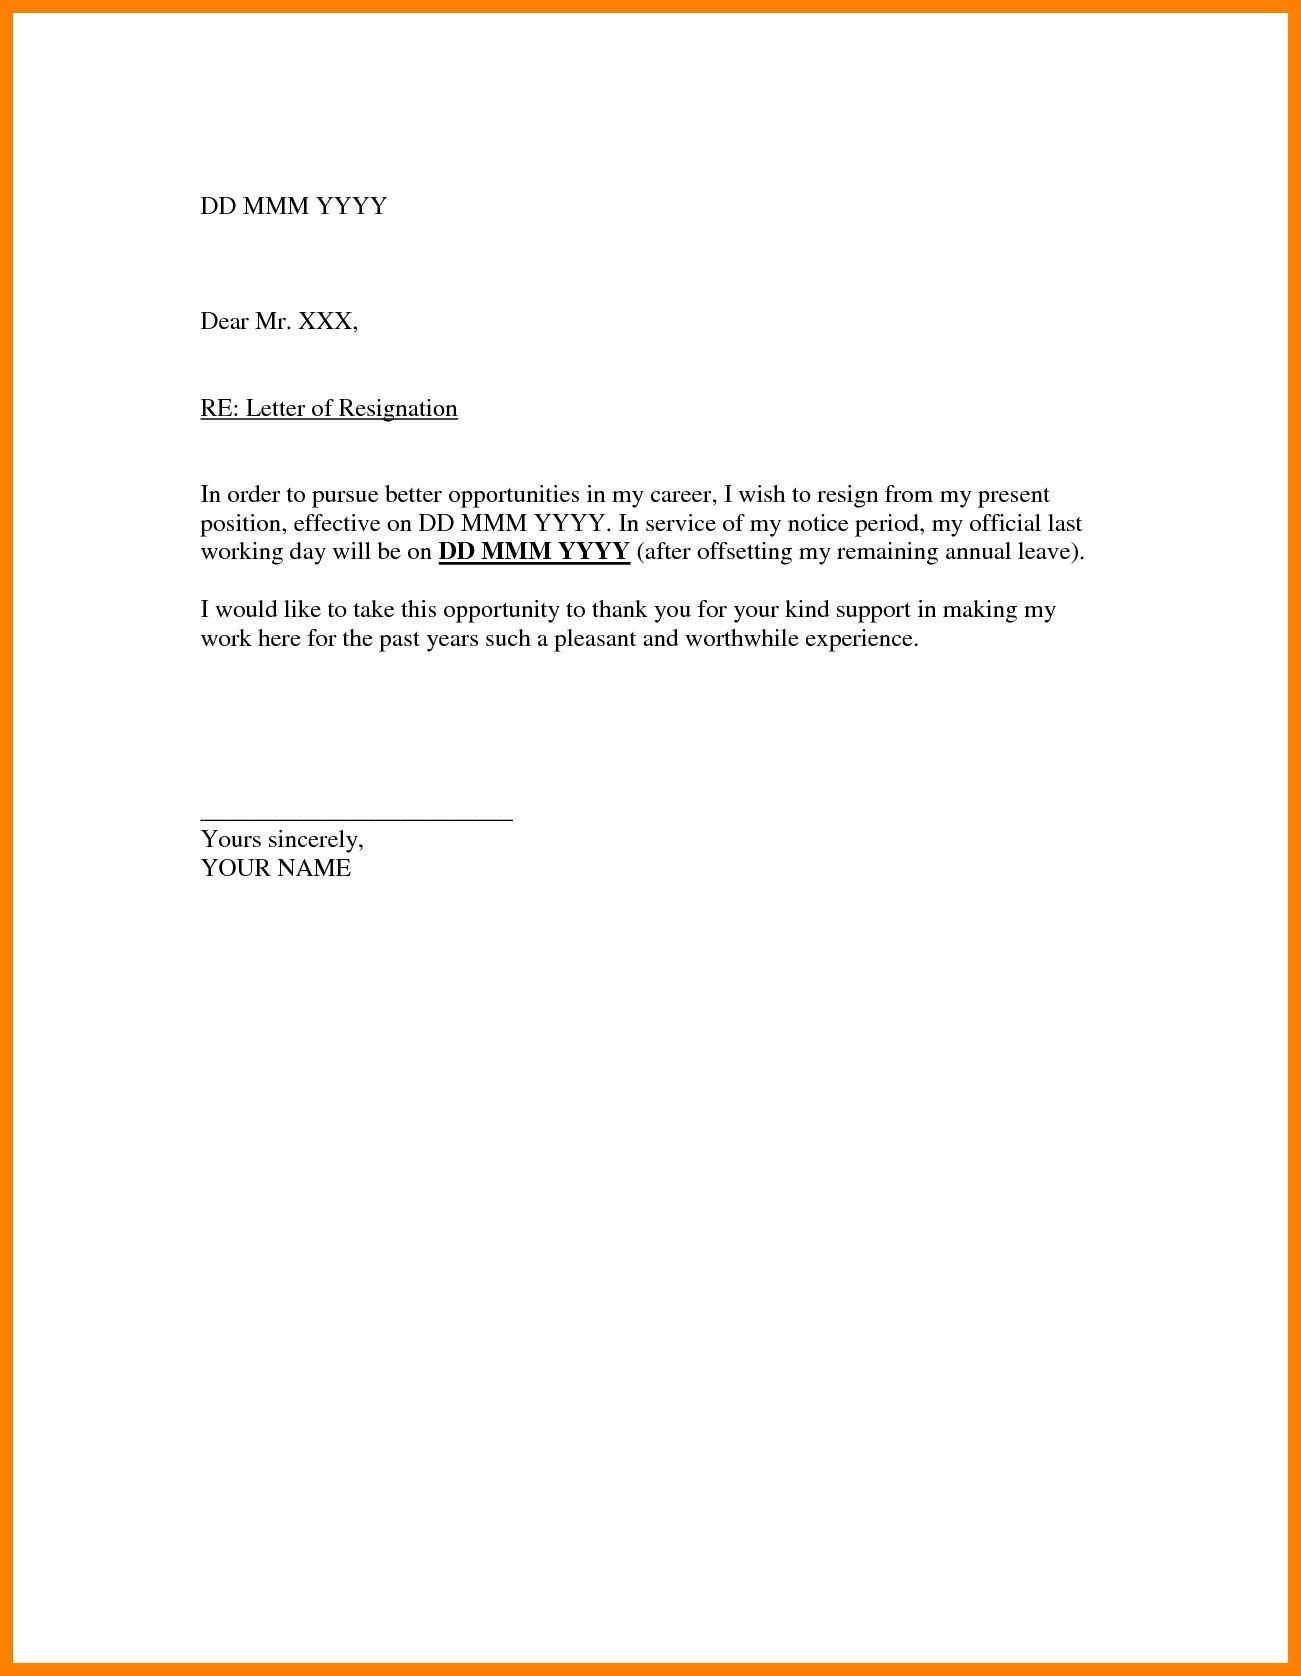 Sample Letter to Resume Work after Leave Valid Resignation Letter Sample Doc for You,https://letterbuis.com …